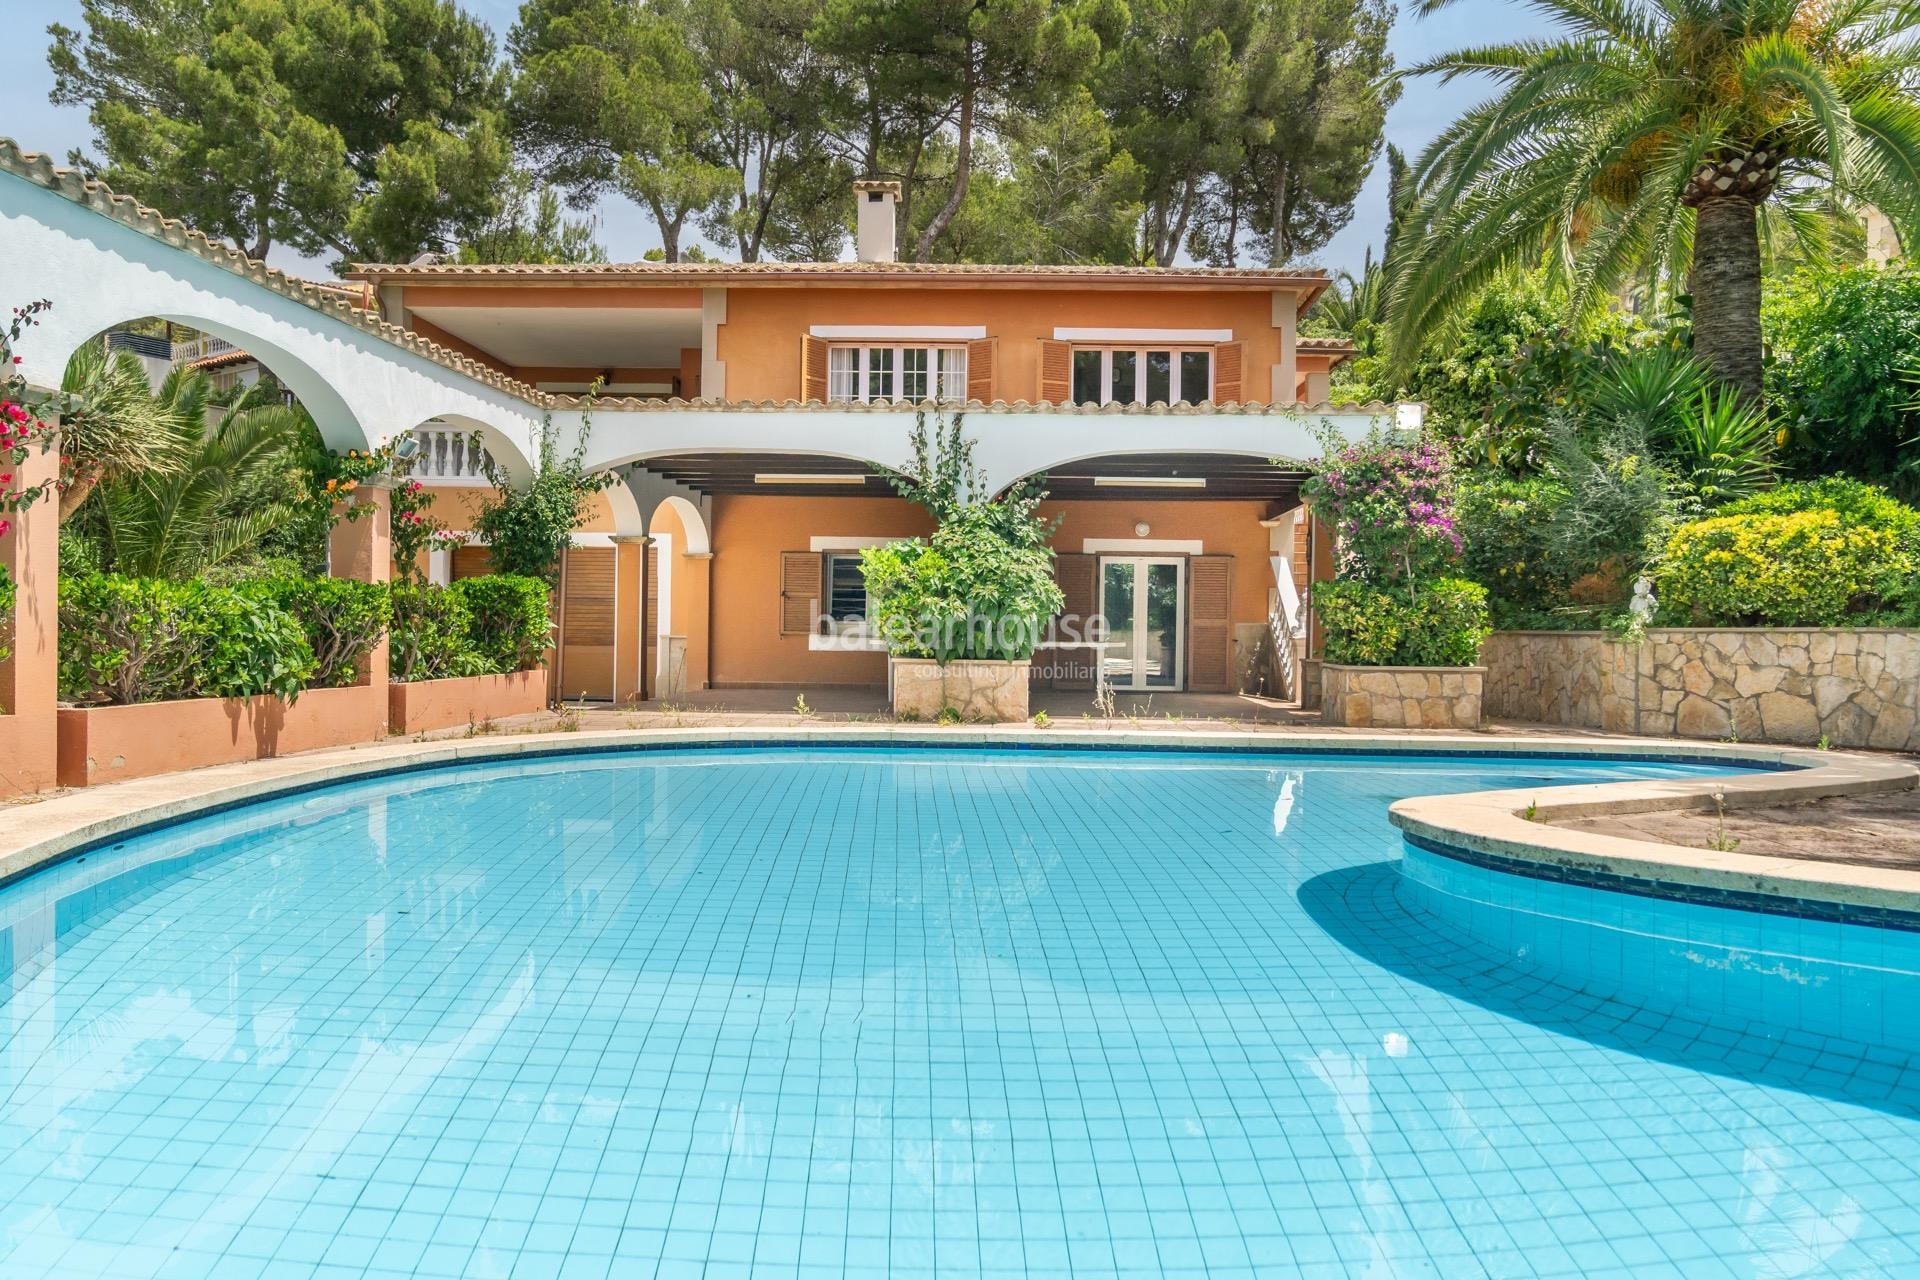 Gepflegte mediterrane Villa mit großen Terrassen und Pool in Strandnähe in Santa Ponsa